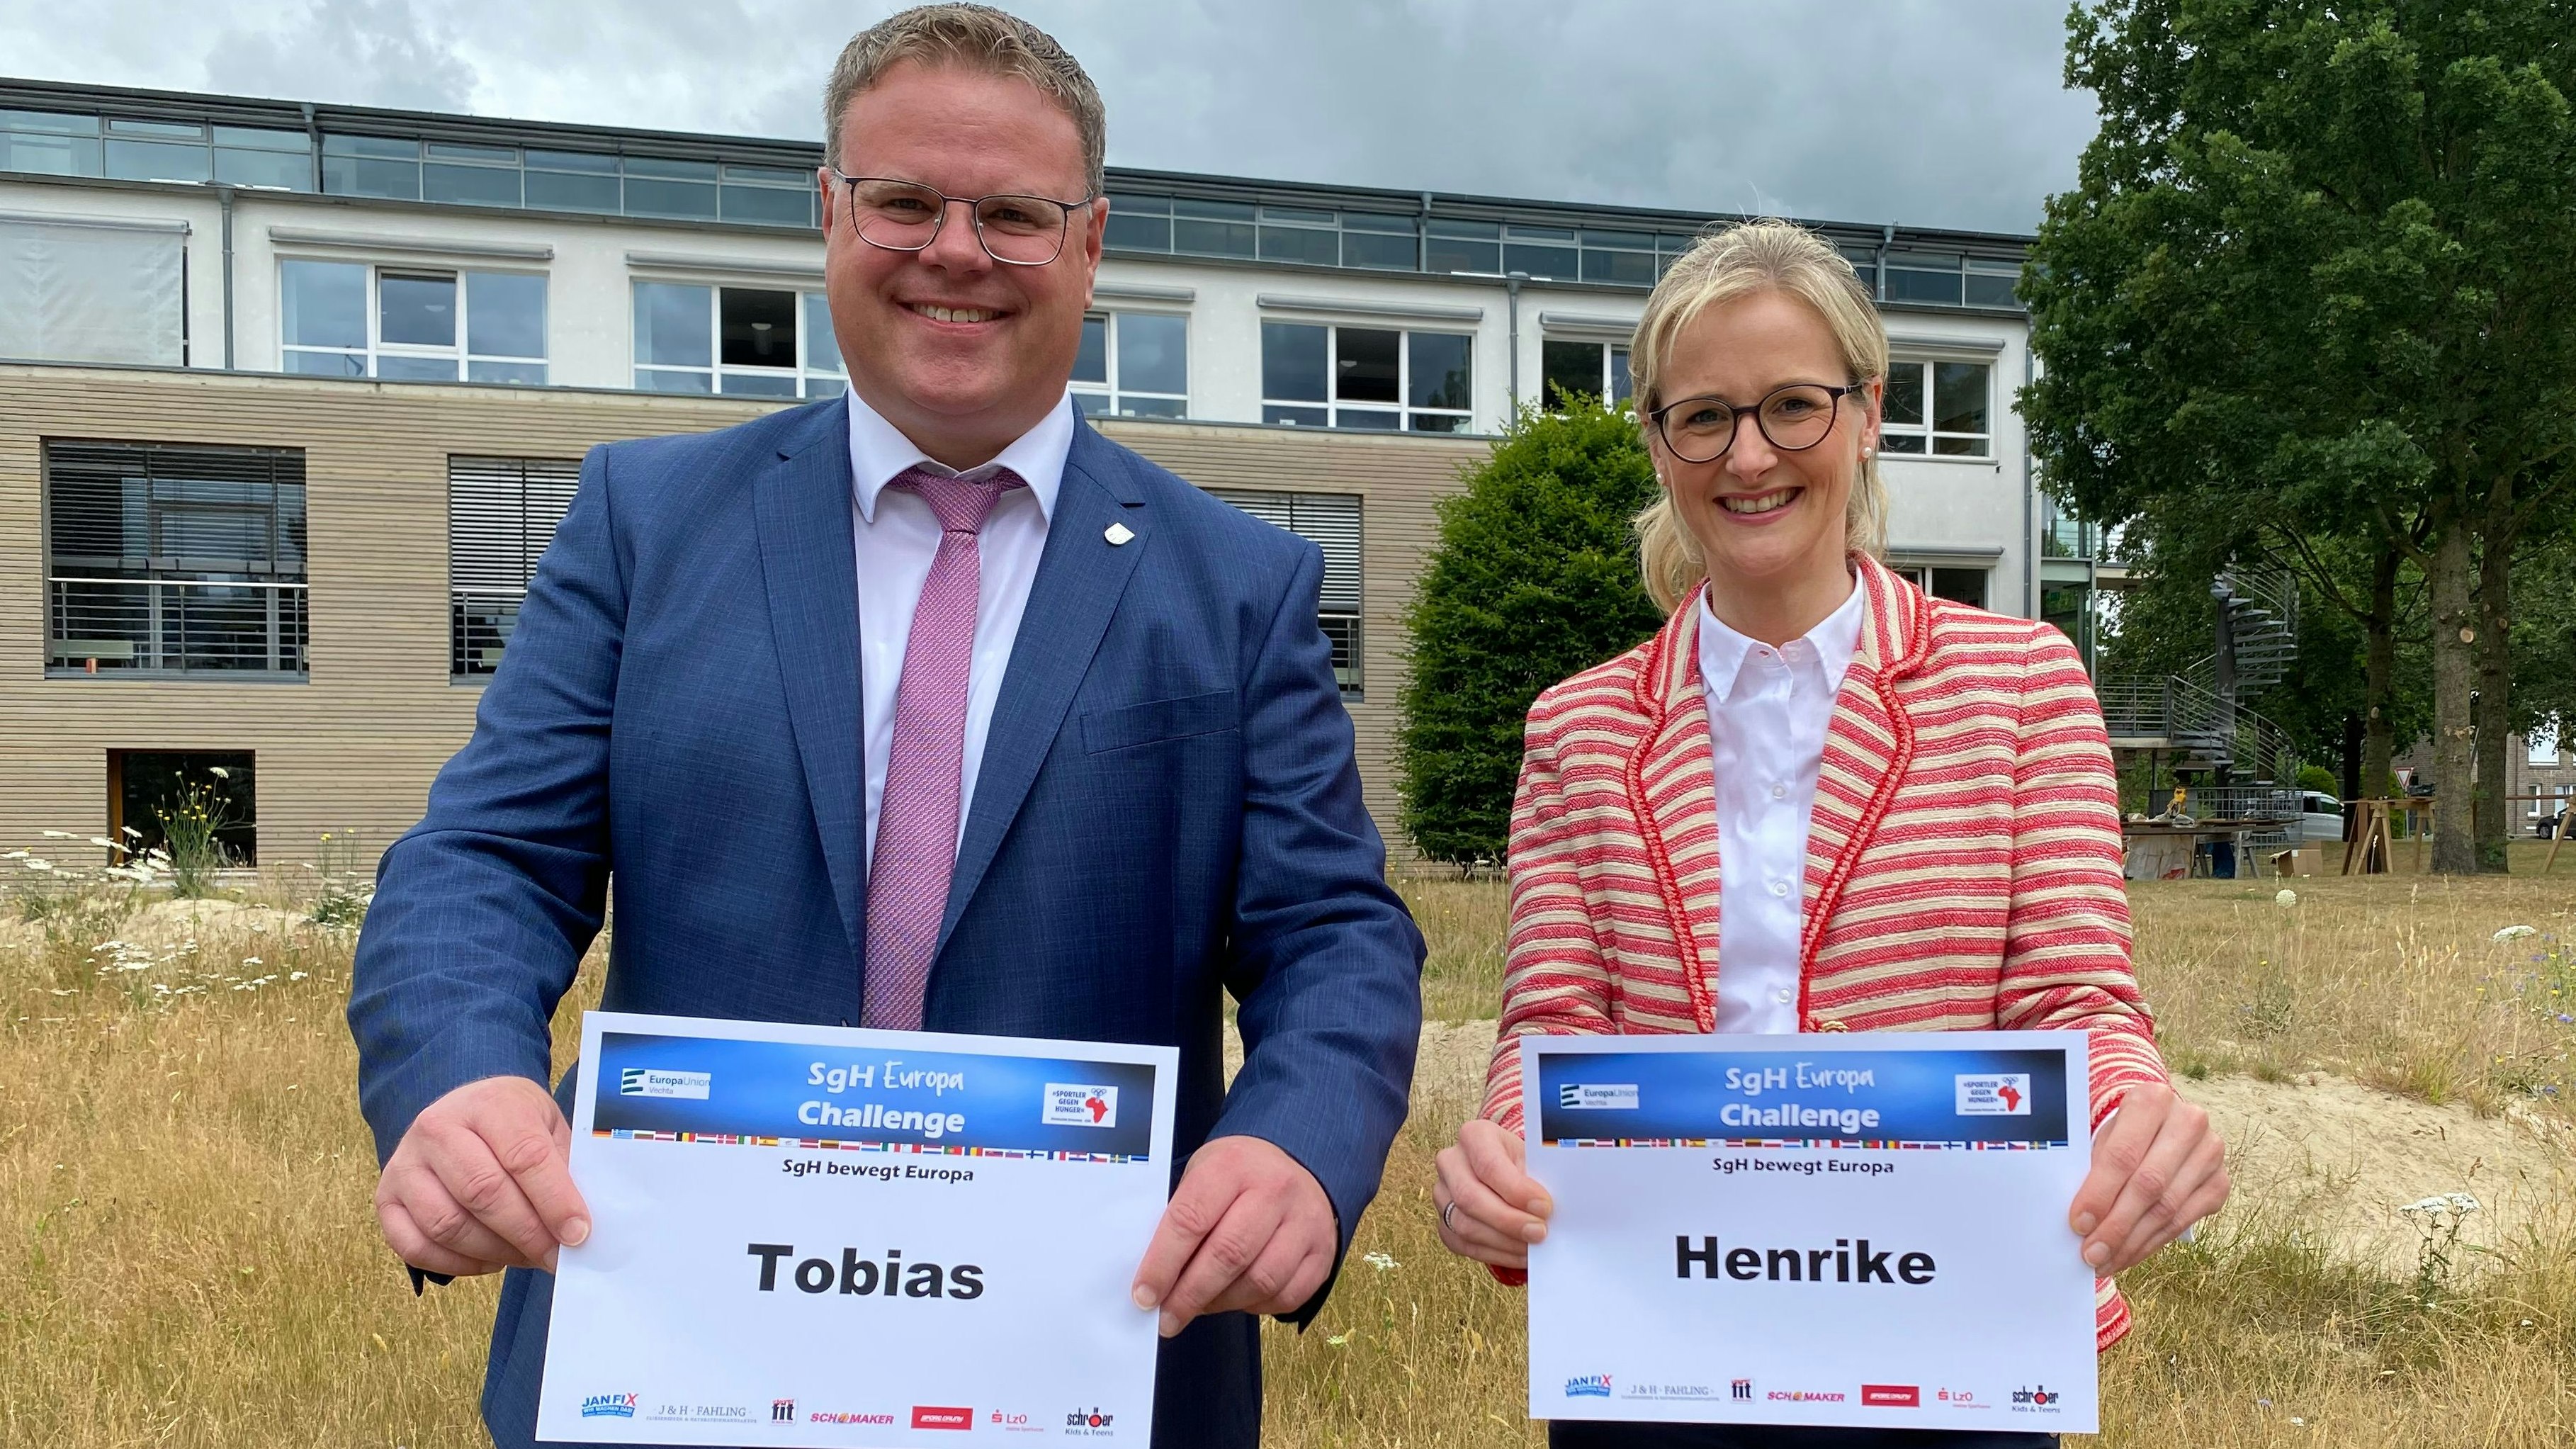 Sie haben schon ihre Startnummern: Landrat Tobias Gerdesmeyer und Lohnes Bürgermeisterin Dr. Henrike Voet. Foto: Steinkamp